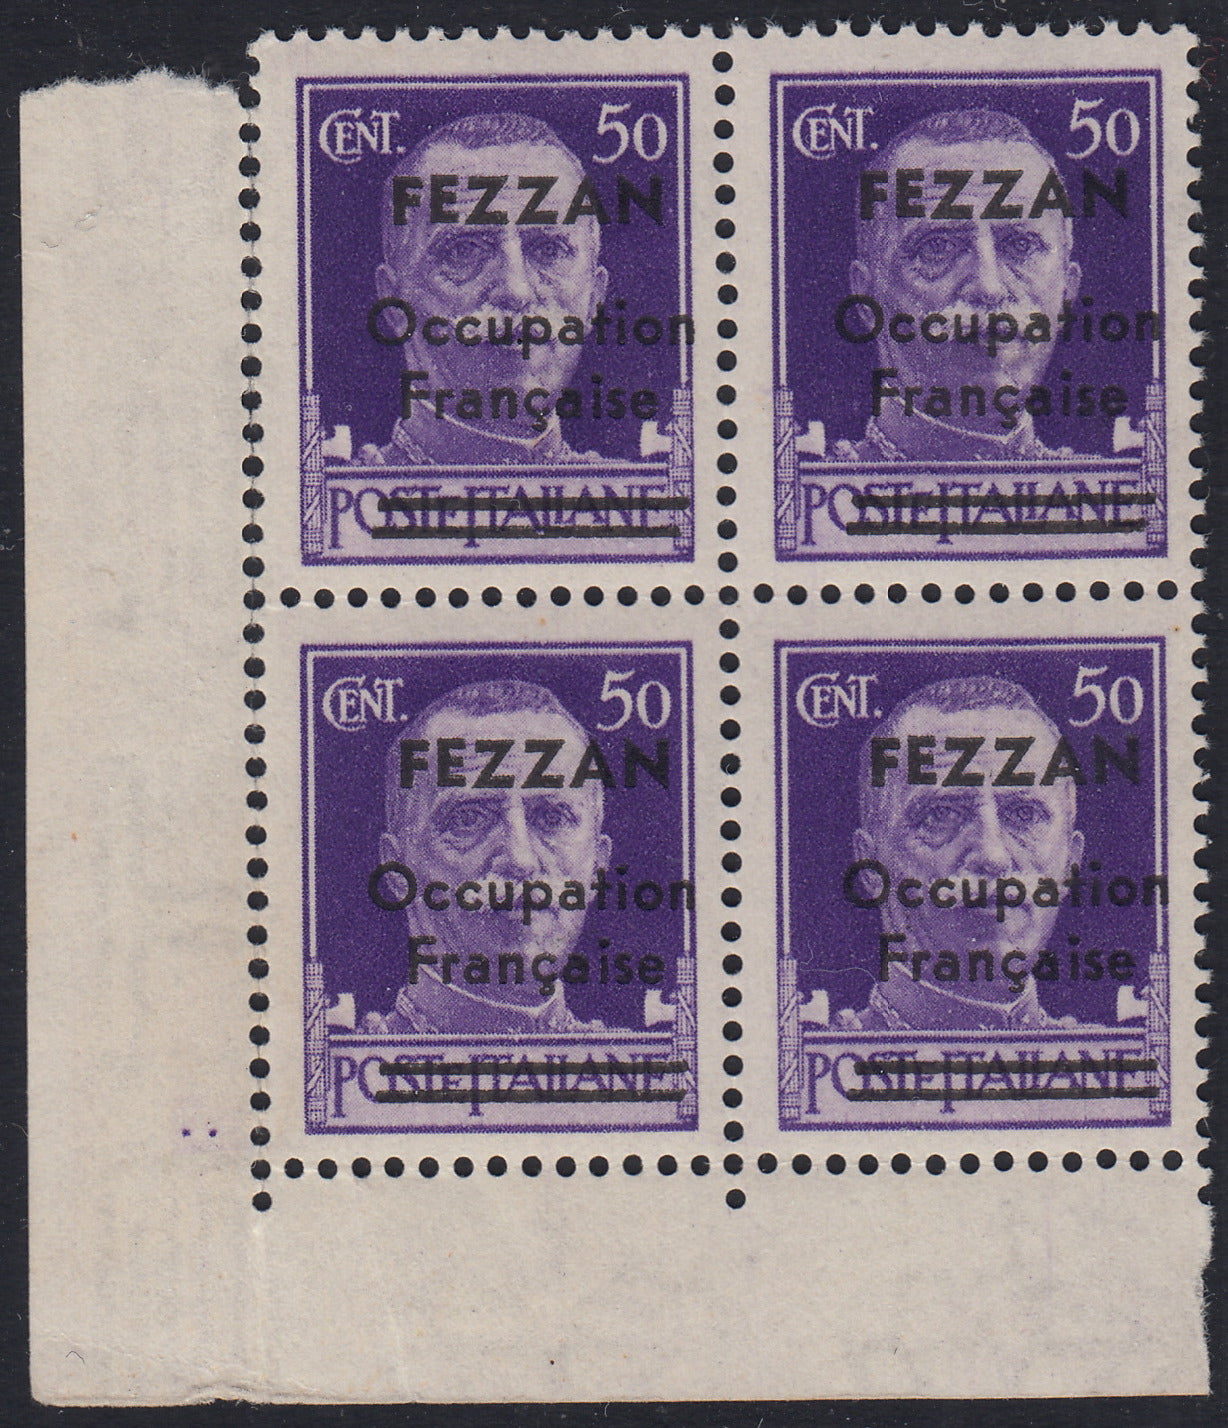 1945 - Occupazione francese del Fezzan, francobollo d'Italia della serie Imperiale c. 50 violetto soprastampato FEZZAN Occupation Francaise e sbarrette su Poste Italiane nuovo con gomma integra in quartina (1).